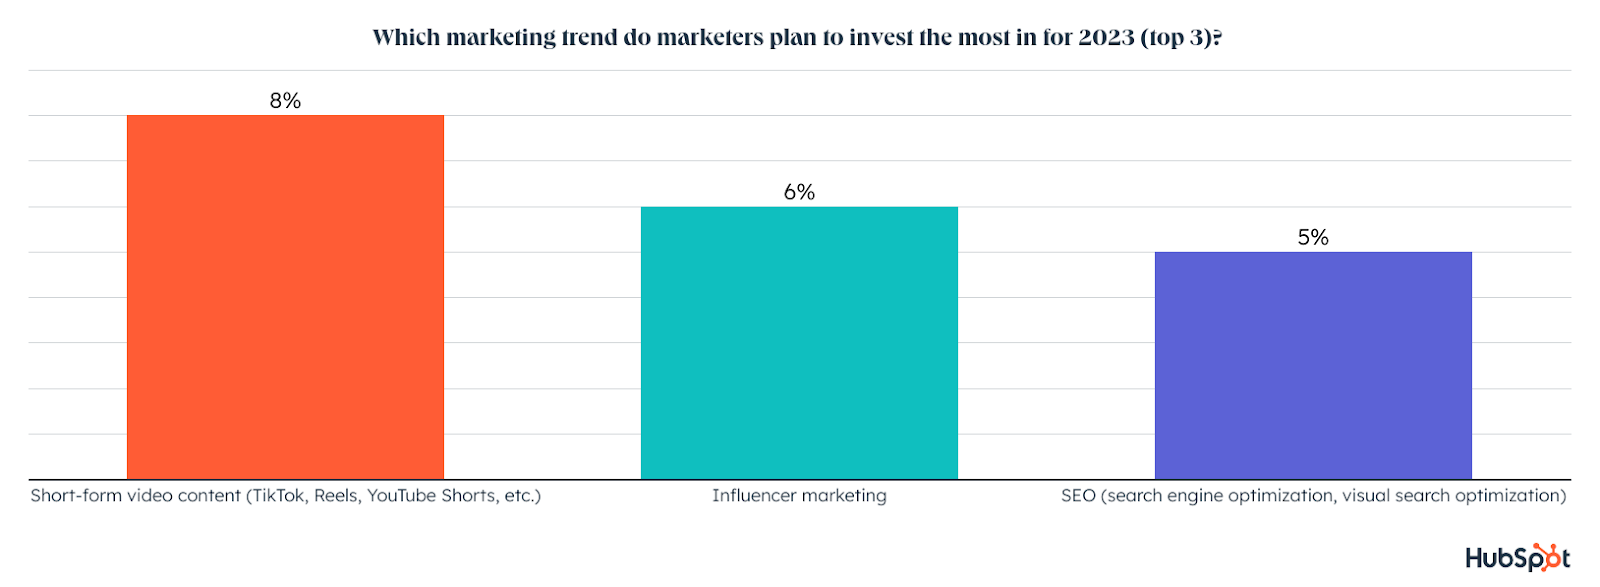 Datos de canales de marketing, ¿en qué tendencia de marketing los especialistas en marketing planean invertir más para 2023? Vídeo de formato corto, 8%. Marketing de influencers, 6%. SEO, 5%.